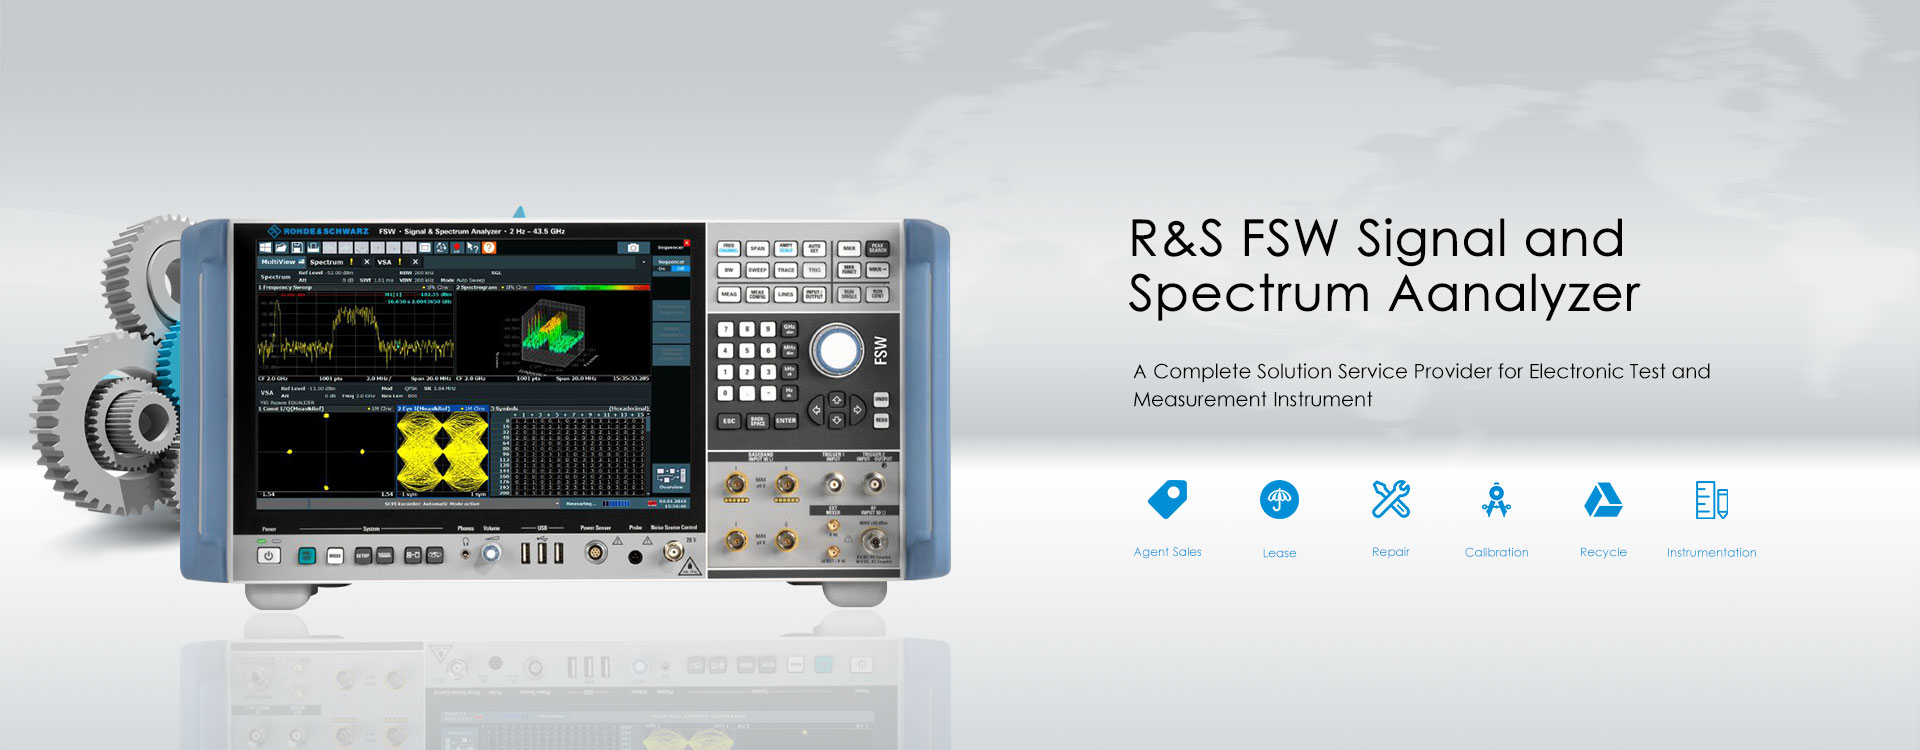 Hiina R&S FSW signaali- ja spektrianalüsaator